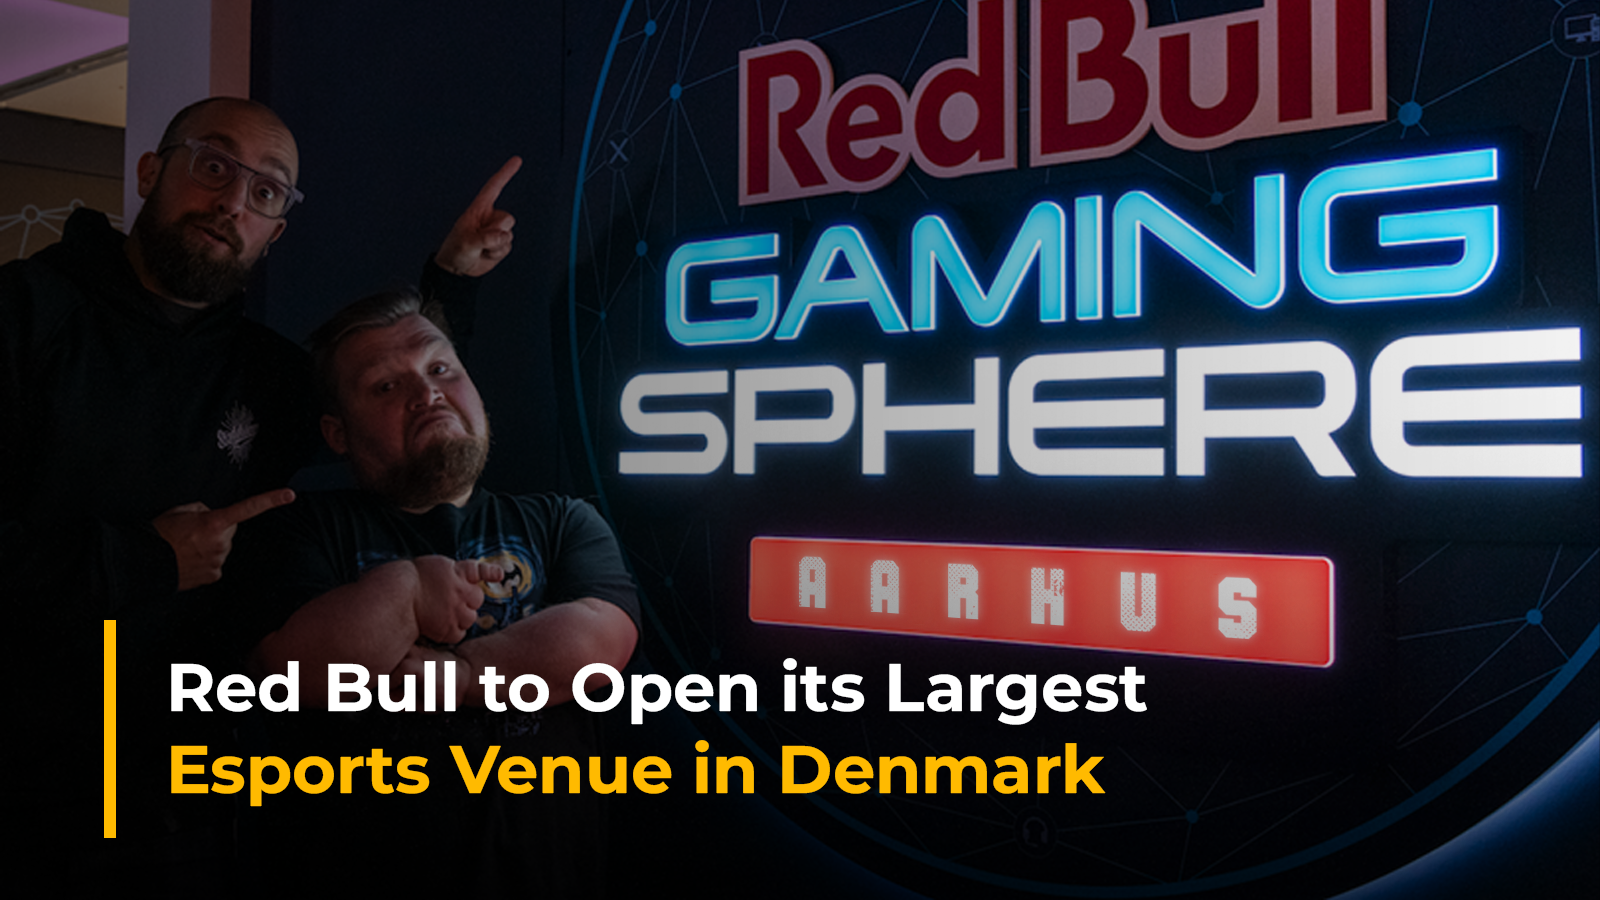  The Red Bull Gaming Sphere Aarhus: Red Bull’s Gaming Venue in Denmark 